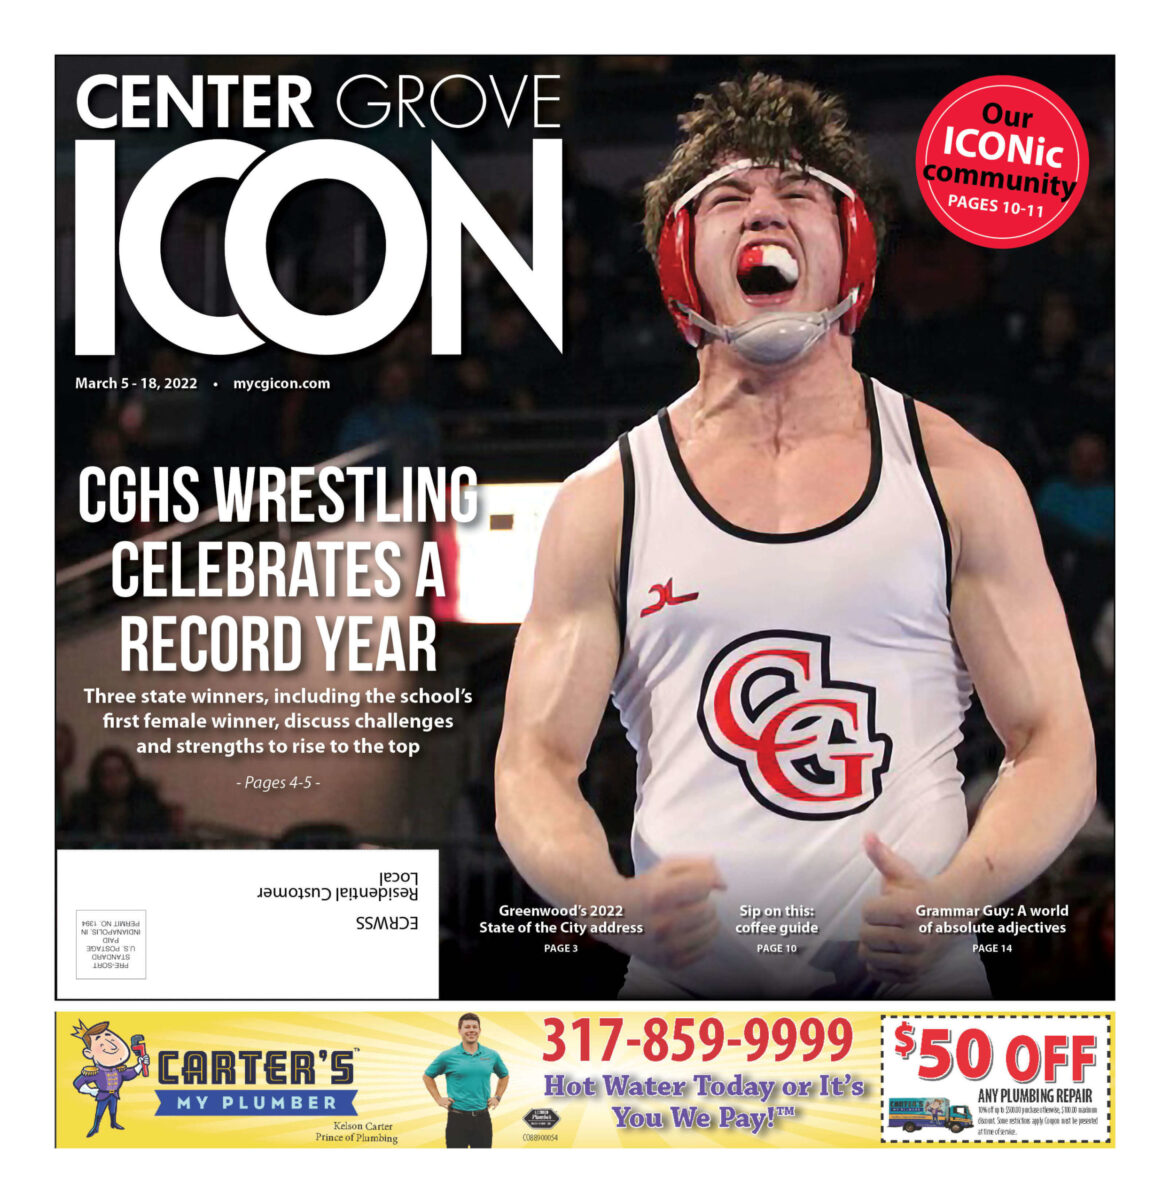 Center Grove ICON – March 5-18, 2022